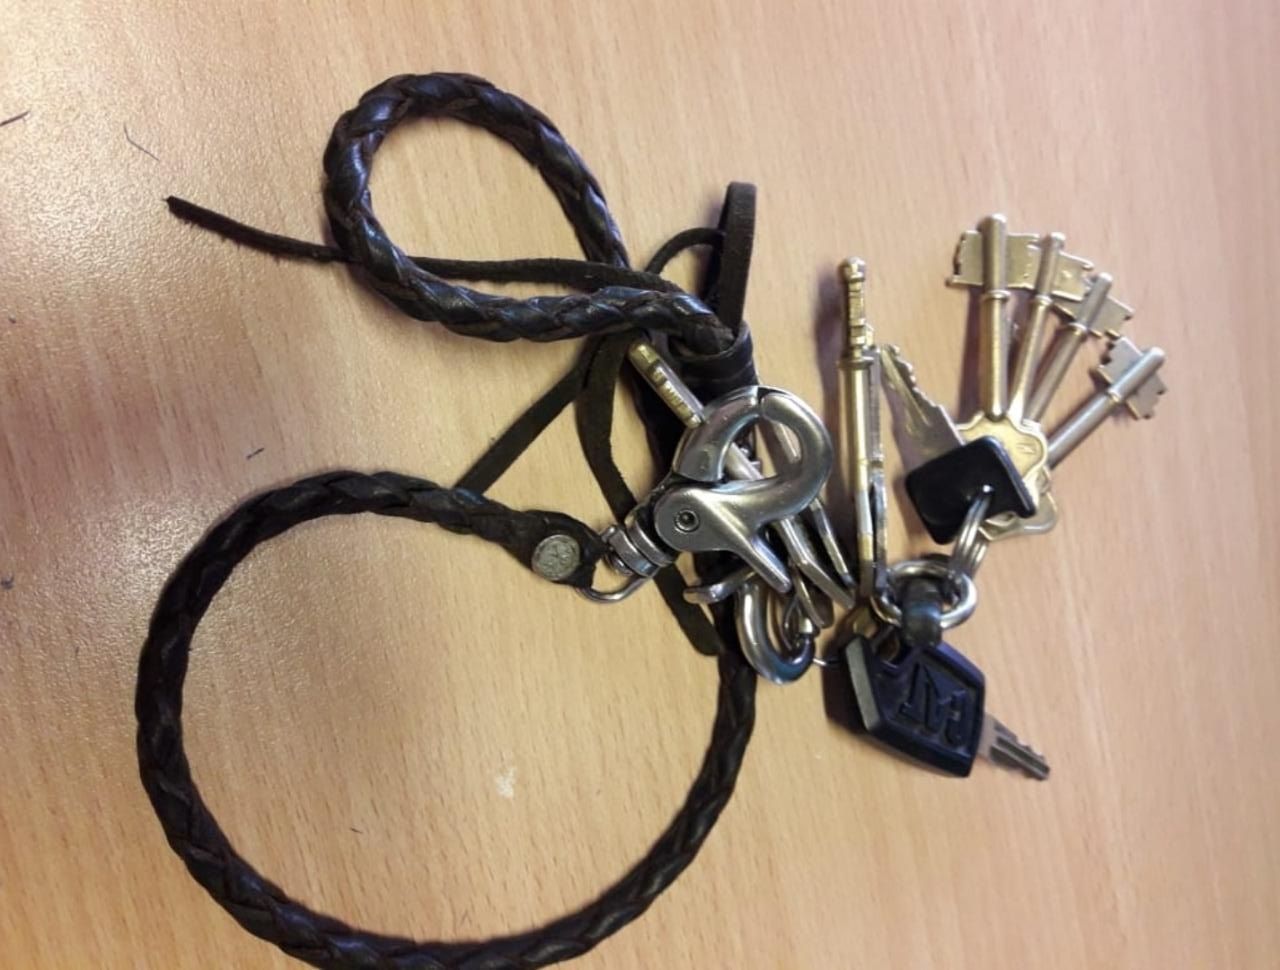 Buscan mochila gris robada con estas llaves y documentación